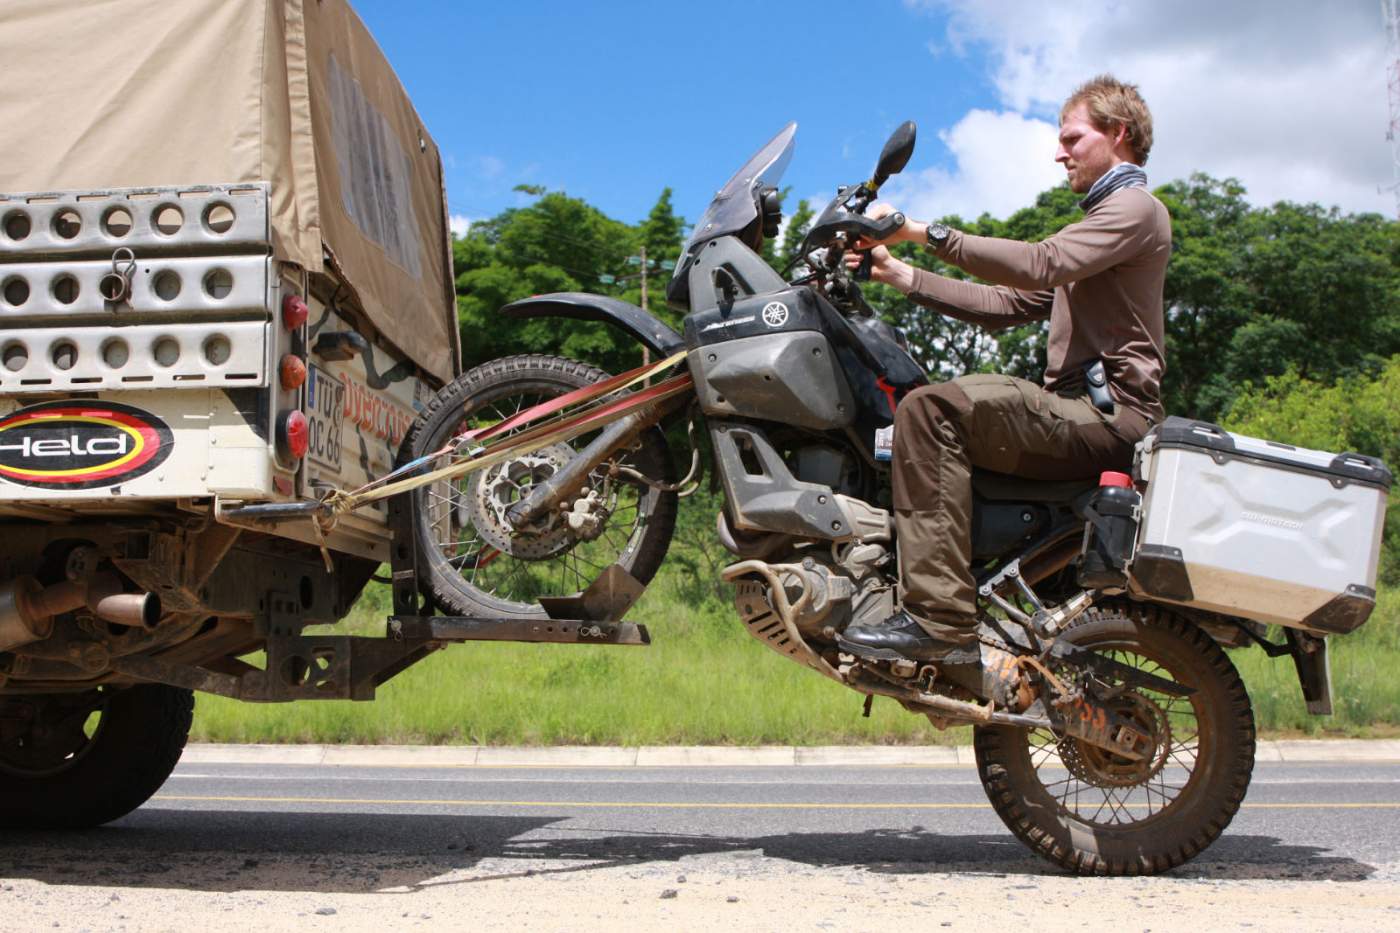 Abschleppung von Motorrad in Afrika